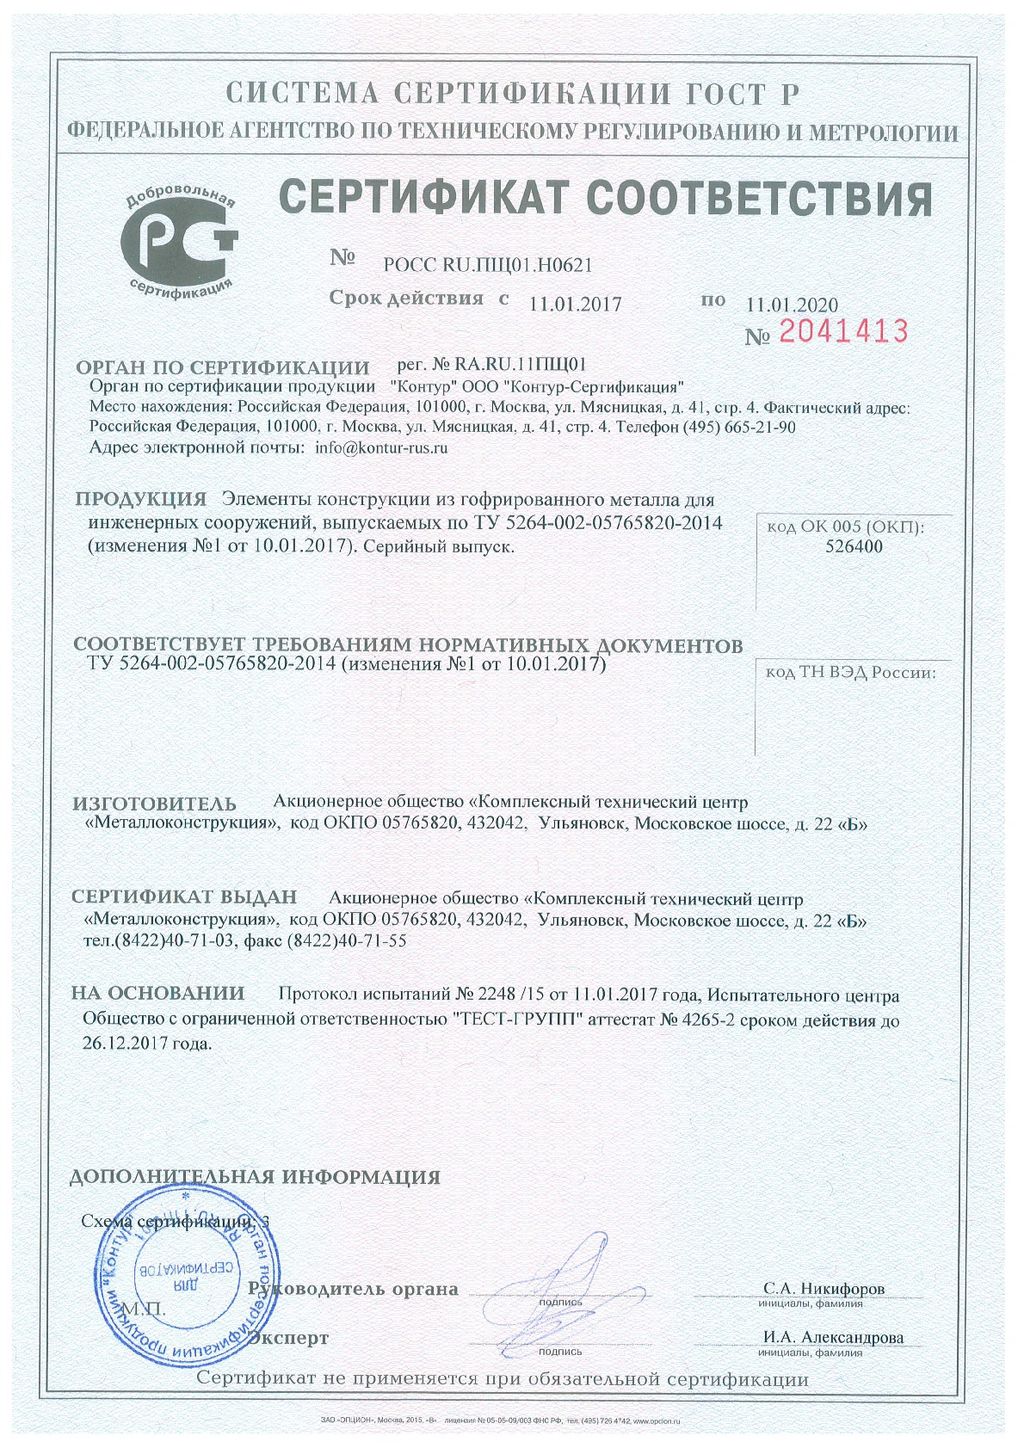 Сертификат соответствия № 2041413, КТЦ Металлоконструкция 